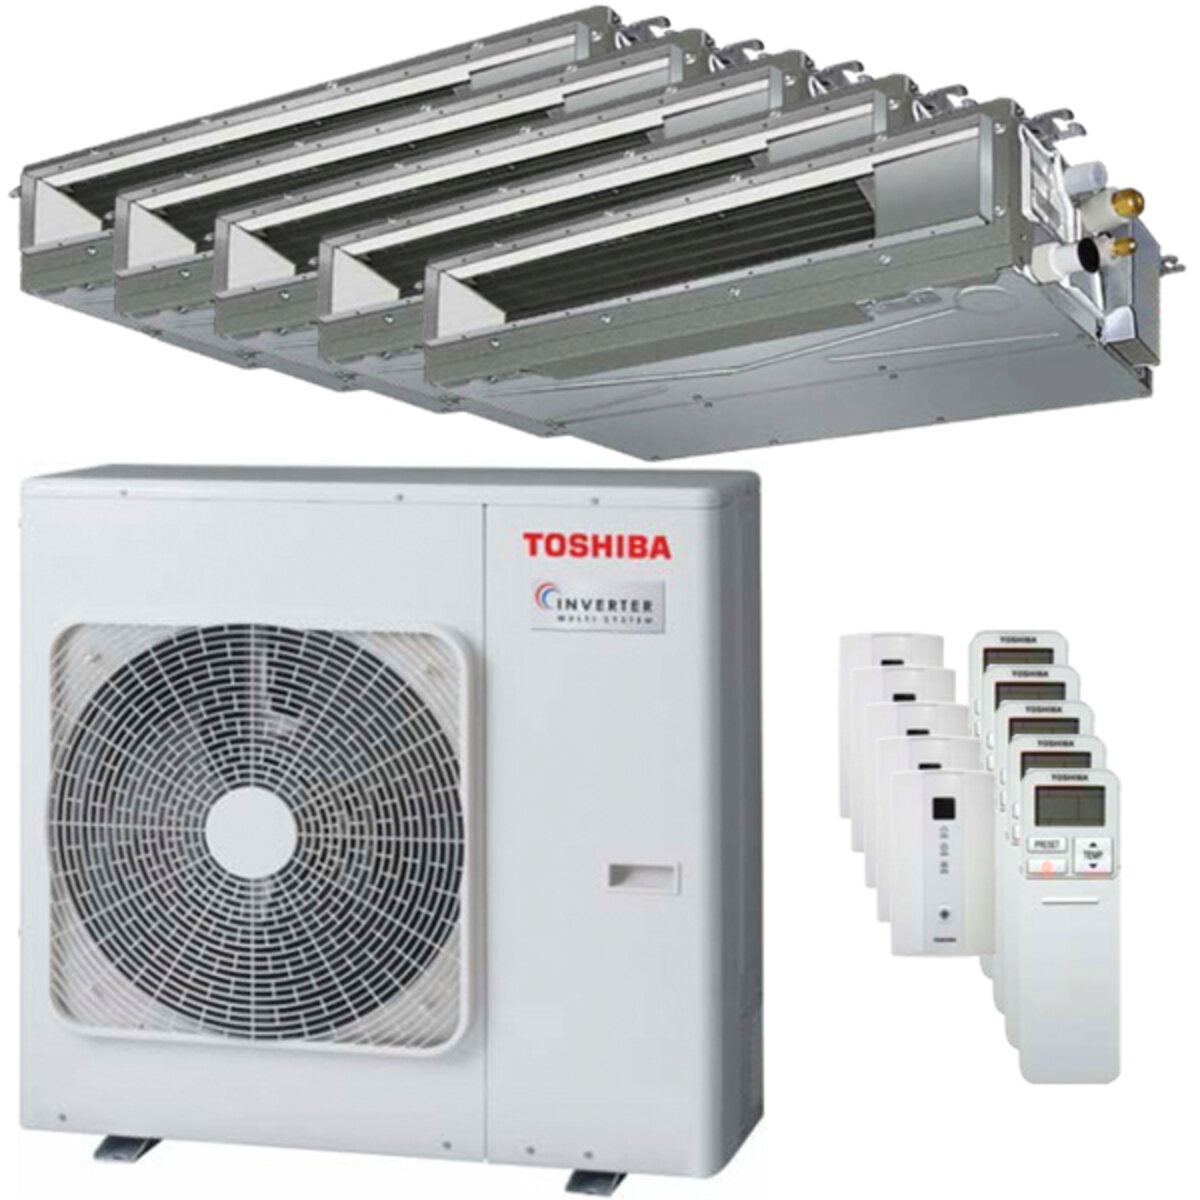 Toshiba Ductable Air Conditioner U2 penta split 9000 + 9000 + 9000 + 9000 + 16000 BTU inverter A++ unité extérieure 10,0 kW